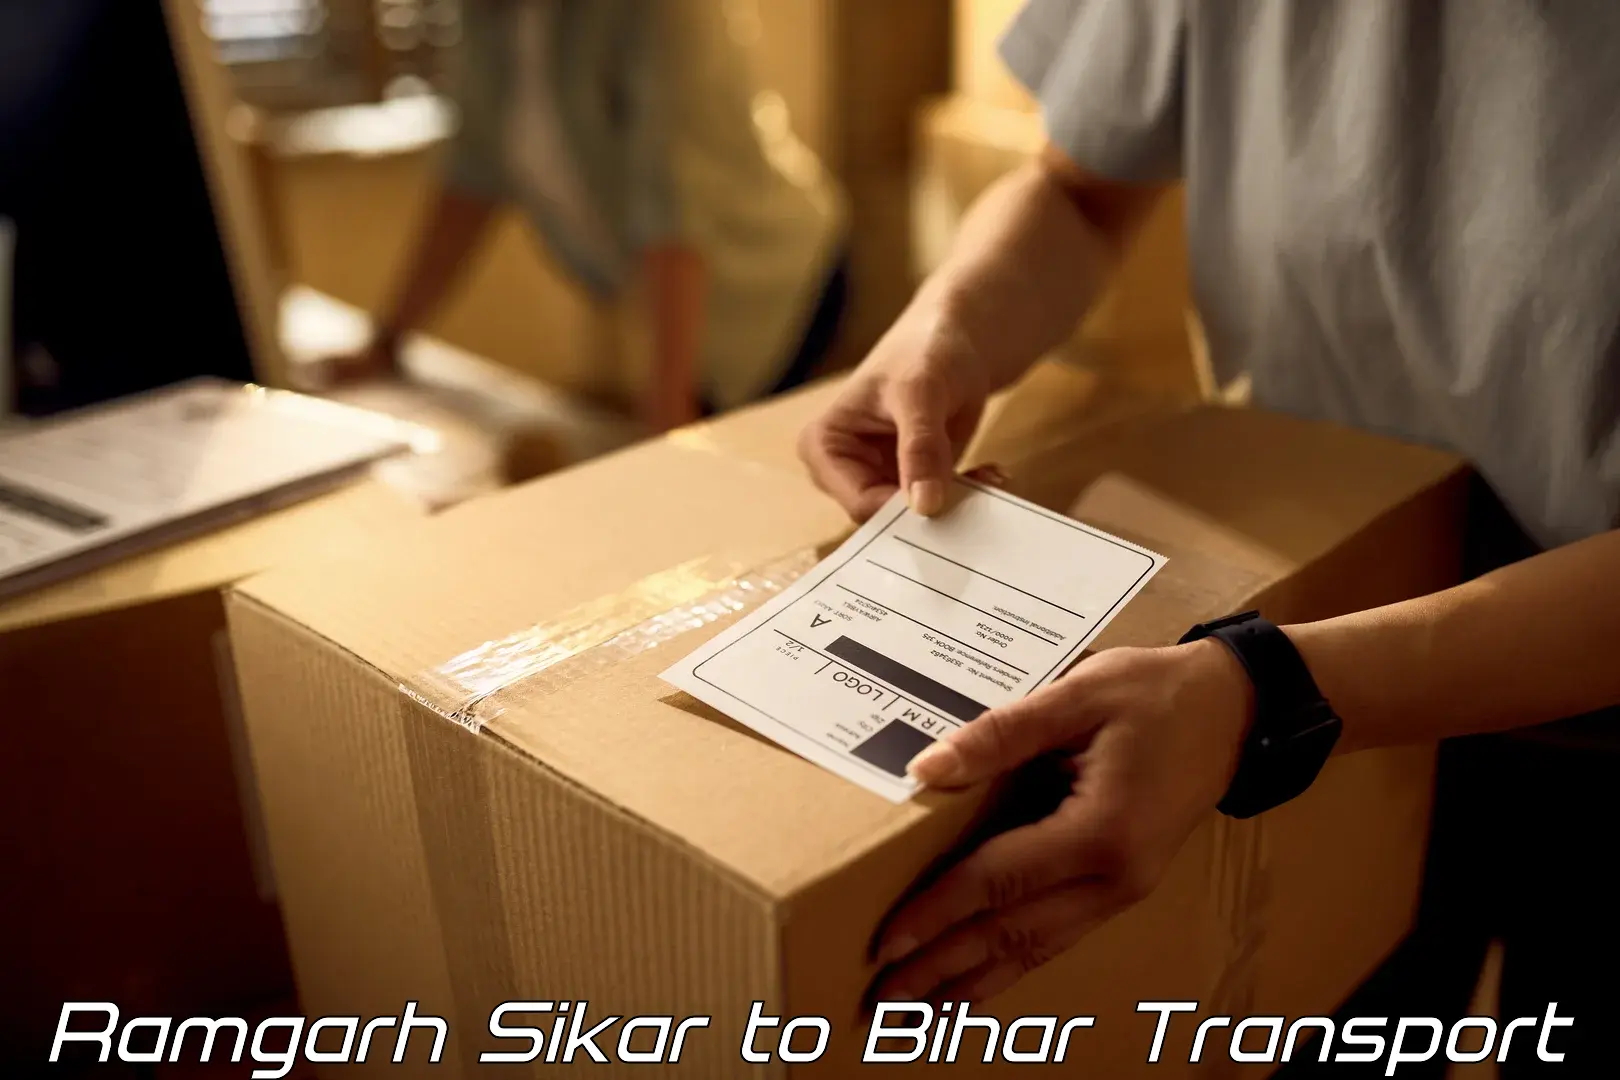 Bike shipping service Ramgarh Sikar to Begusarai